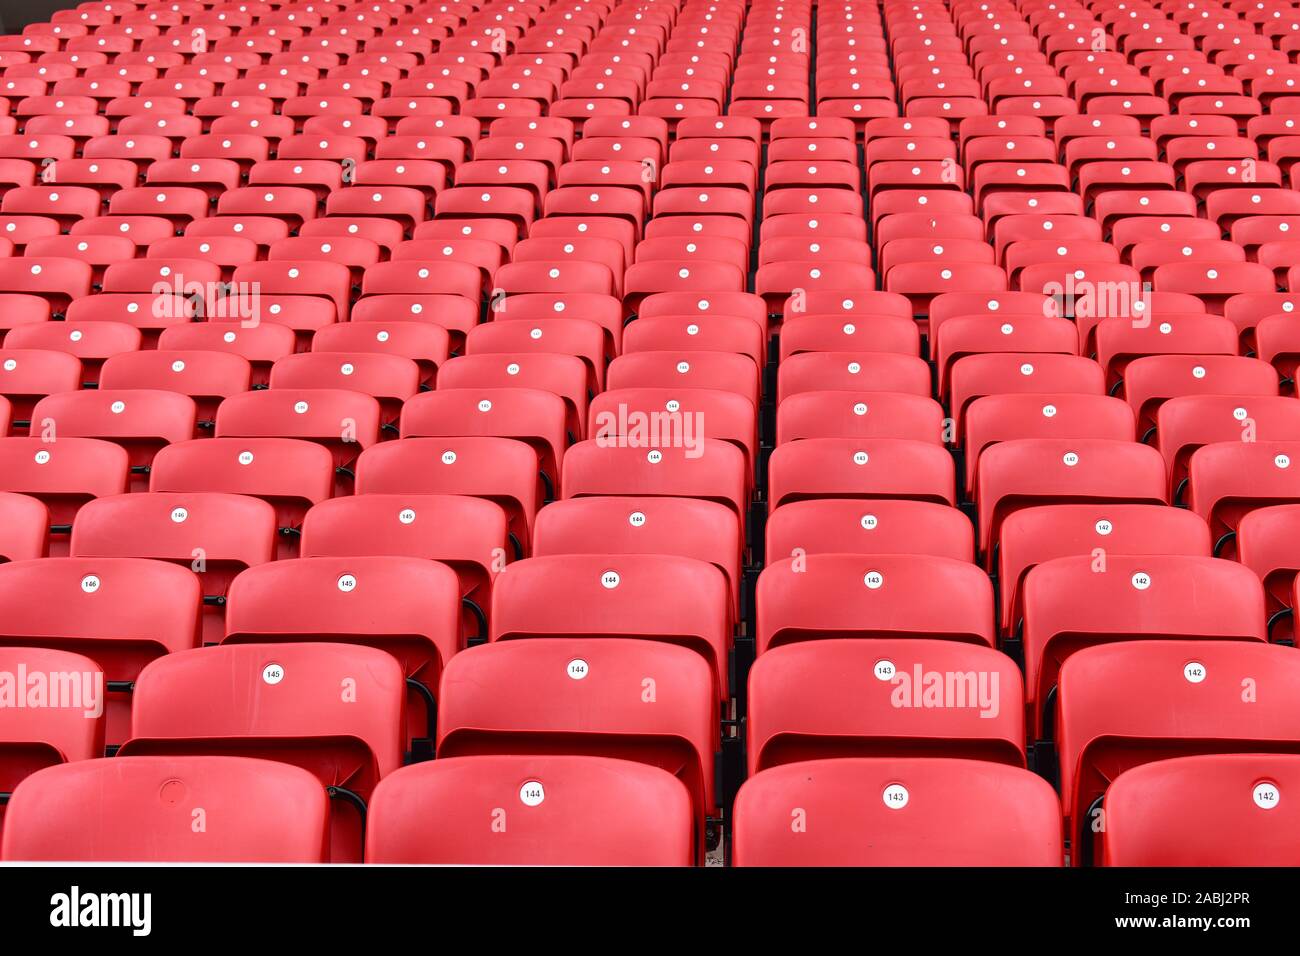 Rote Plastikstühle in einem Stadion. Liverpool FC fan Zonen öffnen vier Stunden vor Spielbeginn am Spieltag und sind ideal für Anhänger zu treffen. Stockfoto